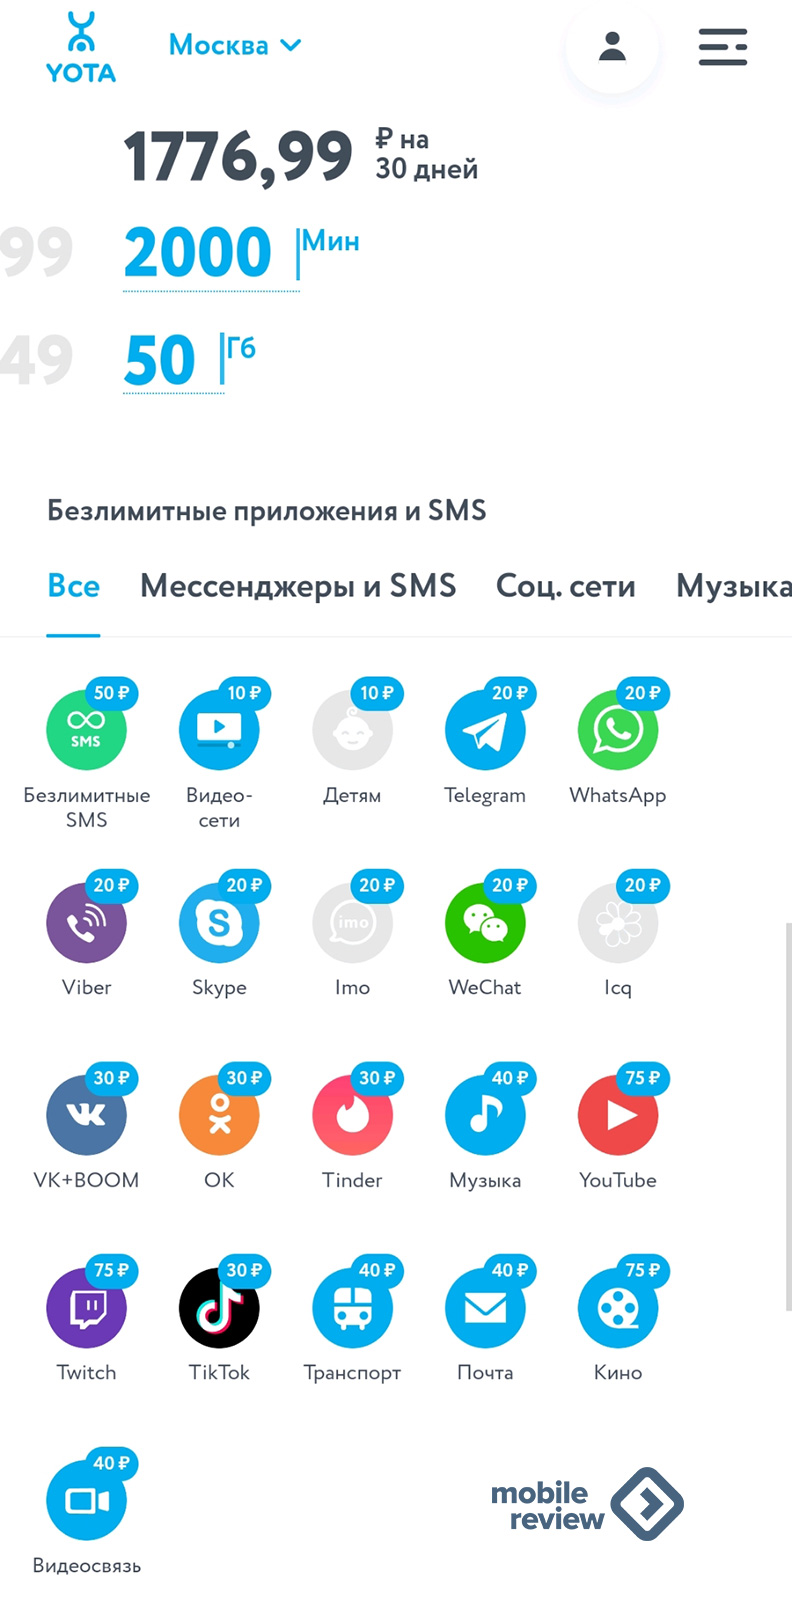 Йота мобильная связь отзывы нижегородская область